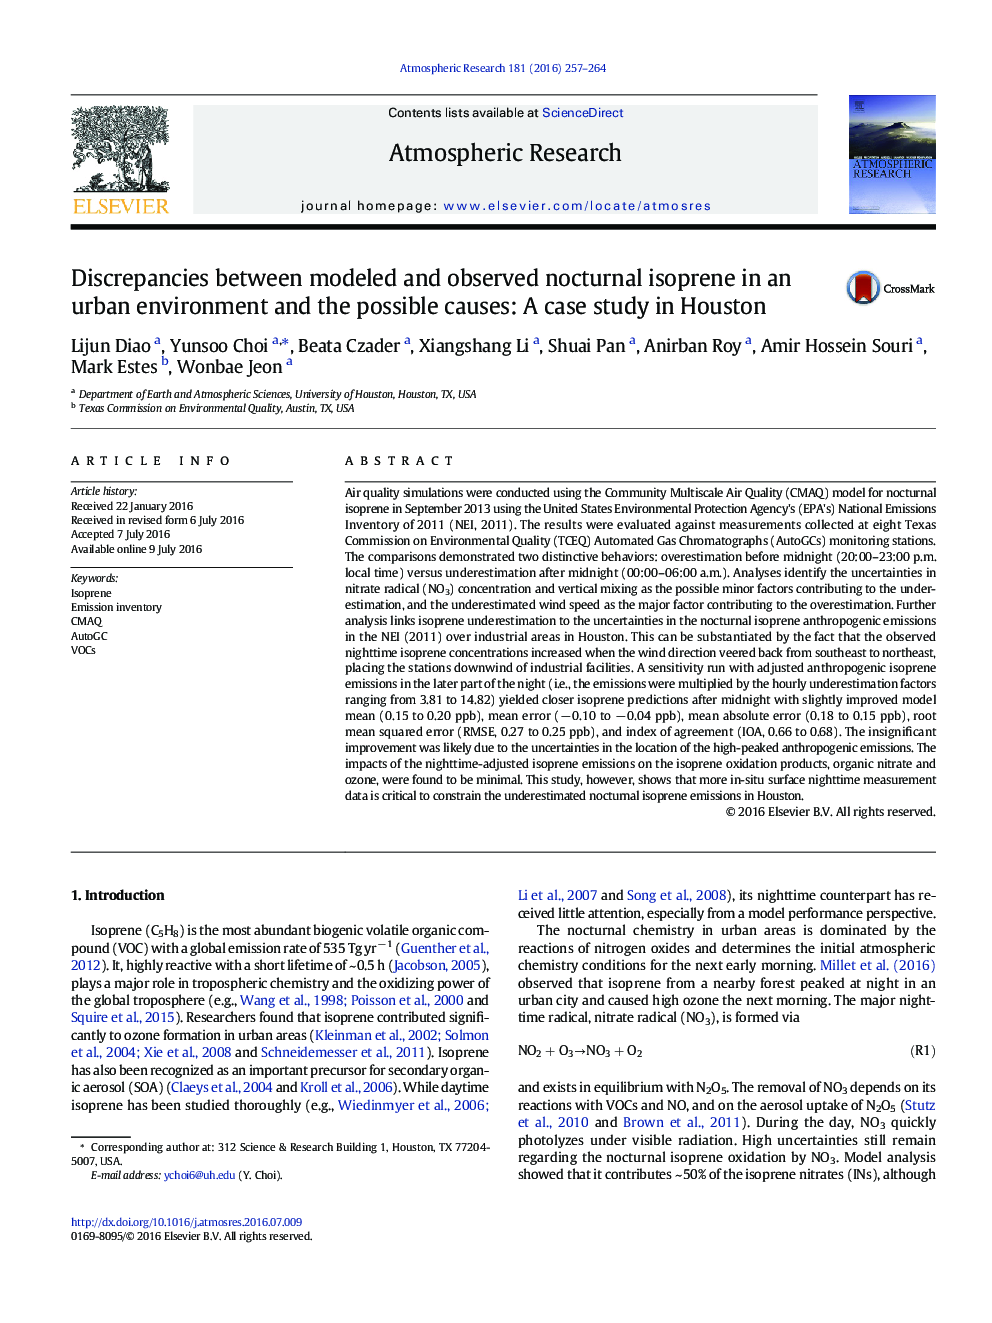 اختلاف بین ایزوپرن شبانه مدل شده و مشاهده شده در محیط شهری و علل احتمالی: مطالعه موردی در هوستون 